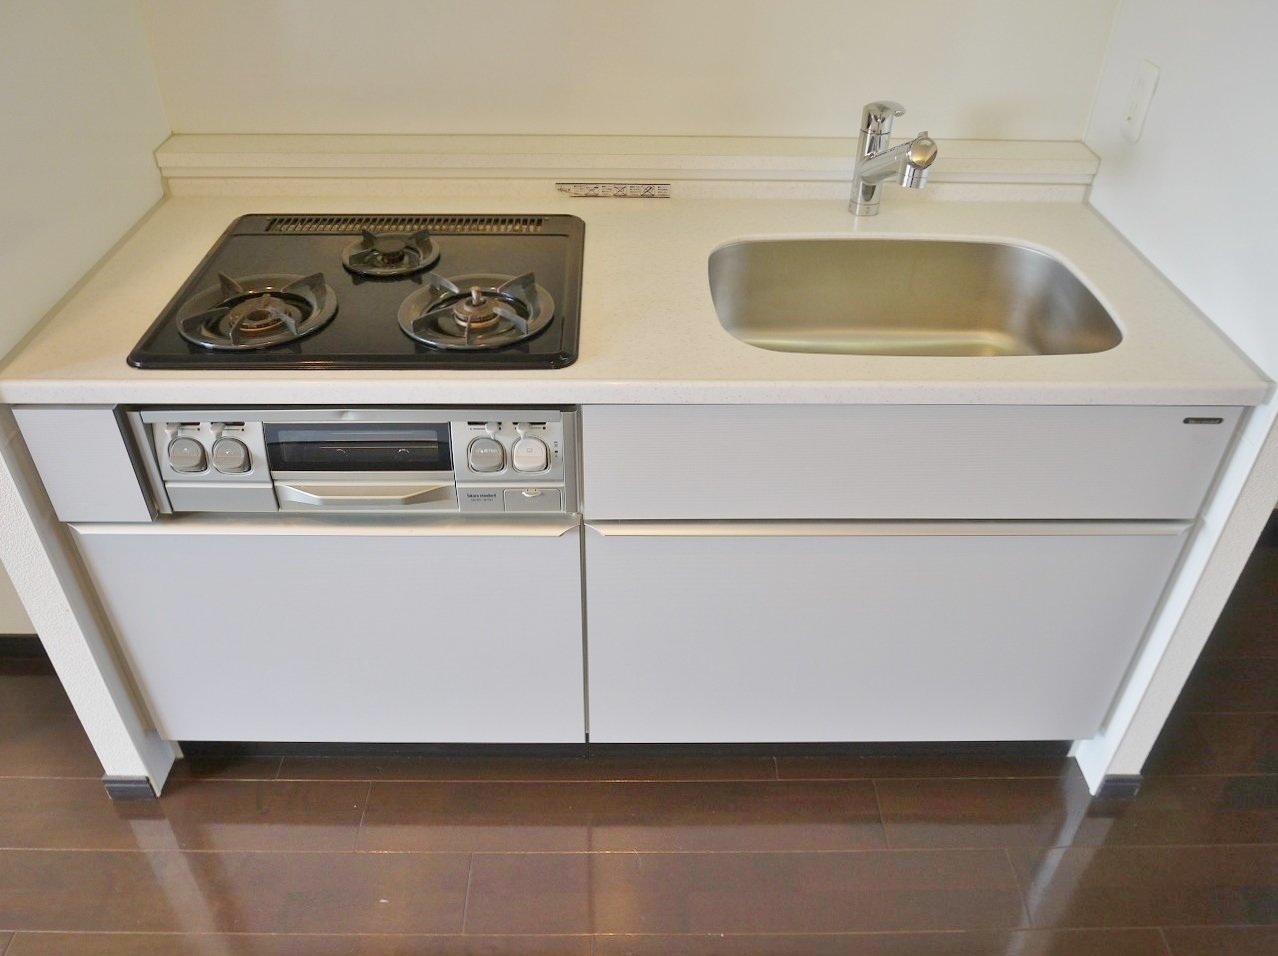 システムキッチンは3口コンロでお洒落なホワイトカラー。毎日の自炊が楽しくなっちゃいますね。